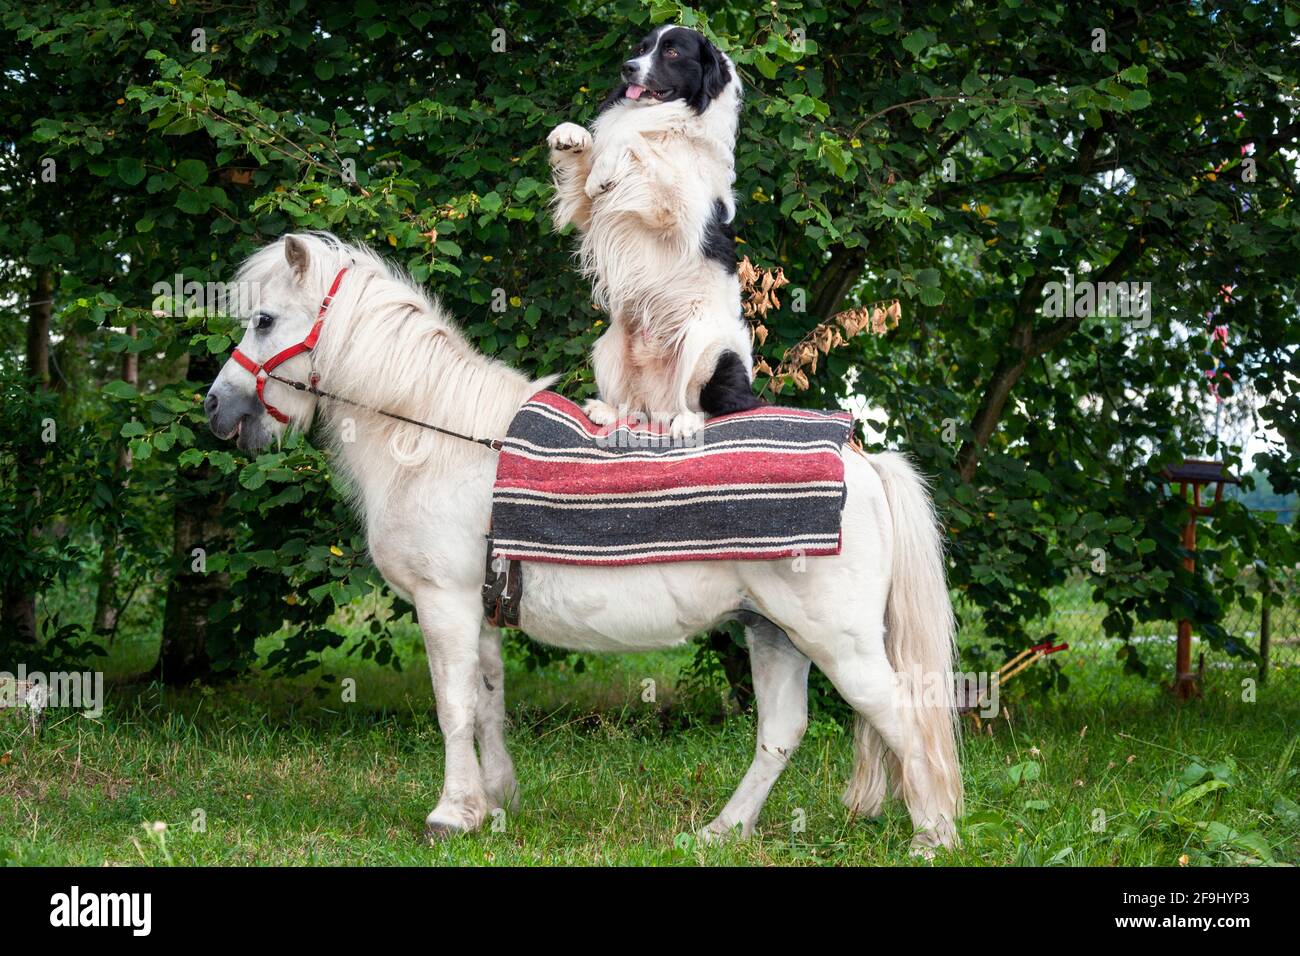 Amicizia animale tra cane e pony Shetland. Un cane seduto in piedi su un pony in piedi. Germania Foto Stock